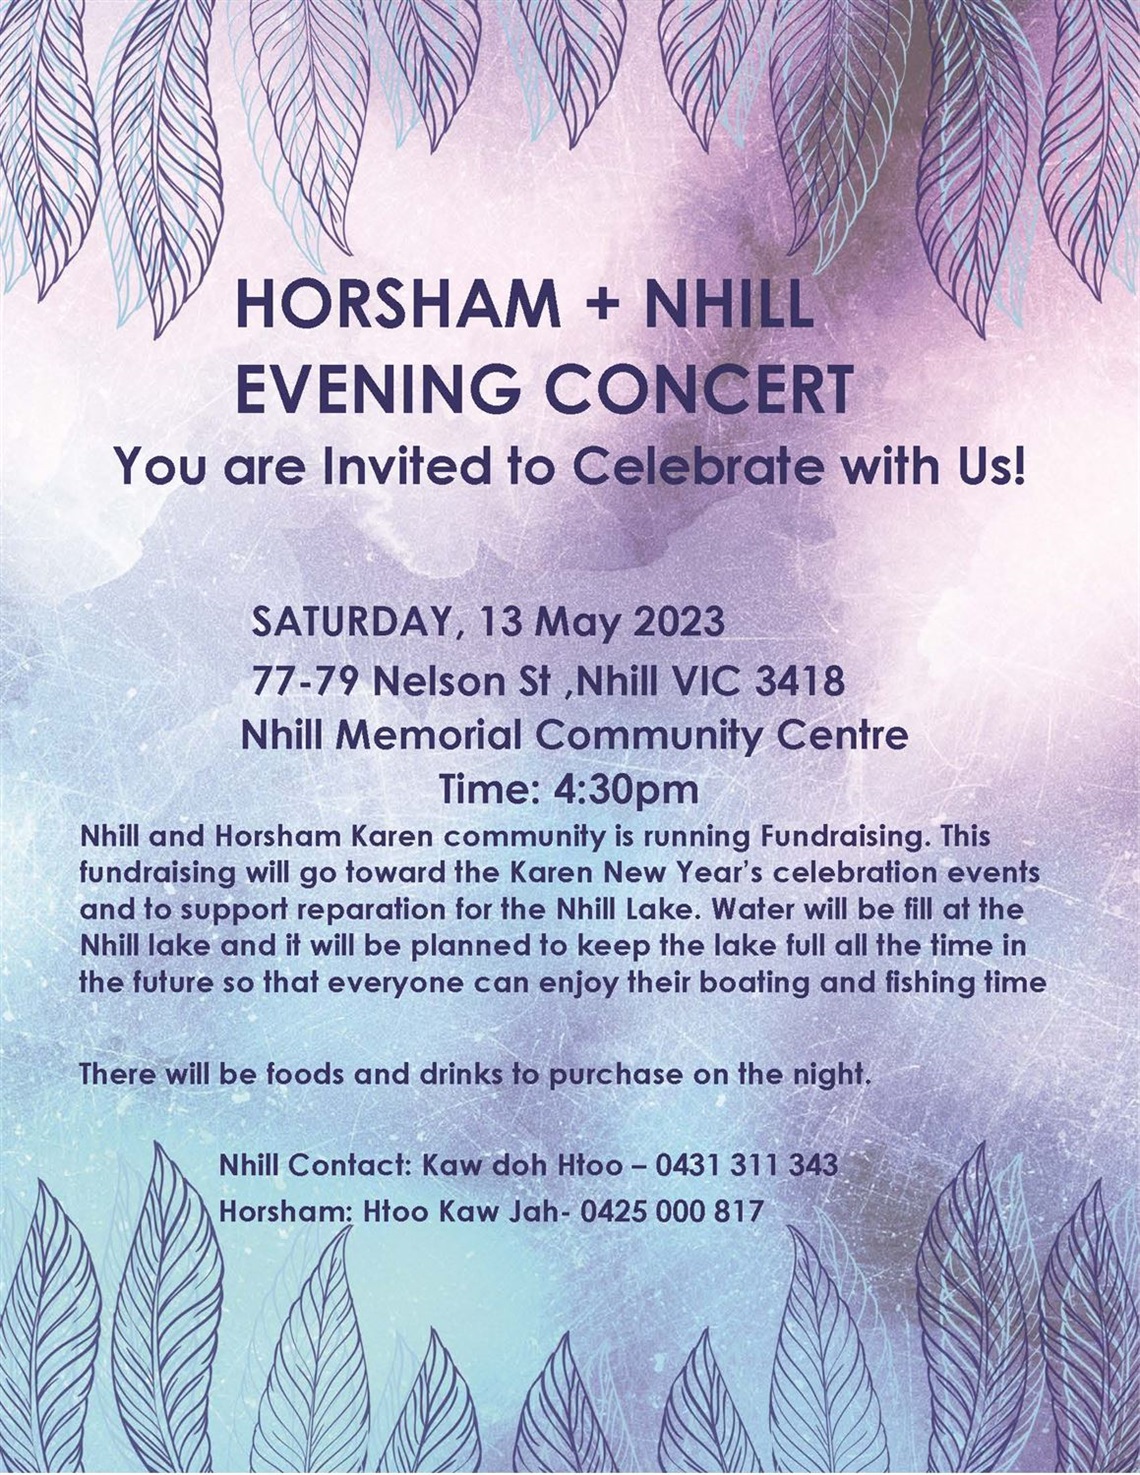 Nhill and Horsham Karen Concert Fundraiser.jpg